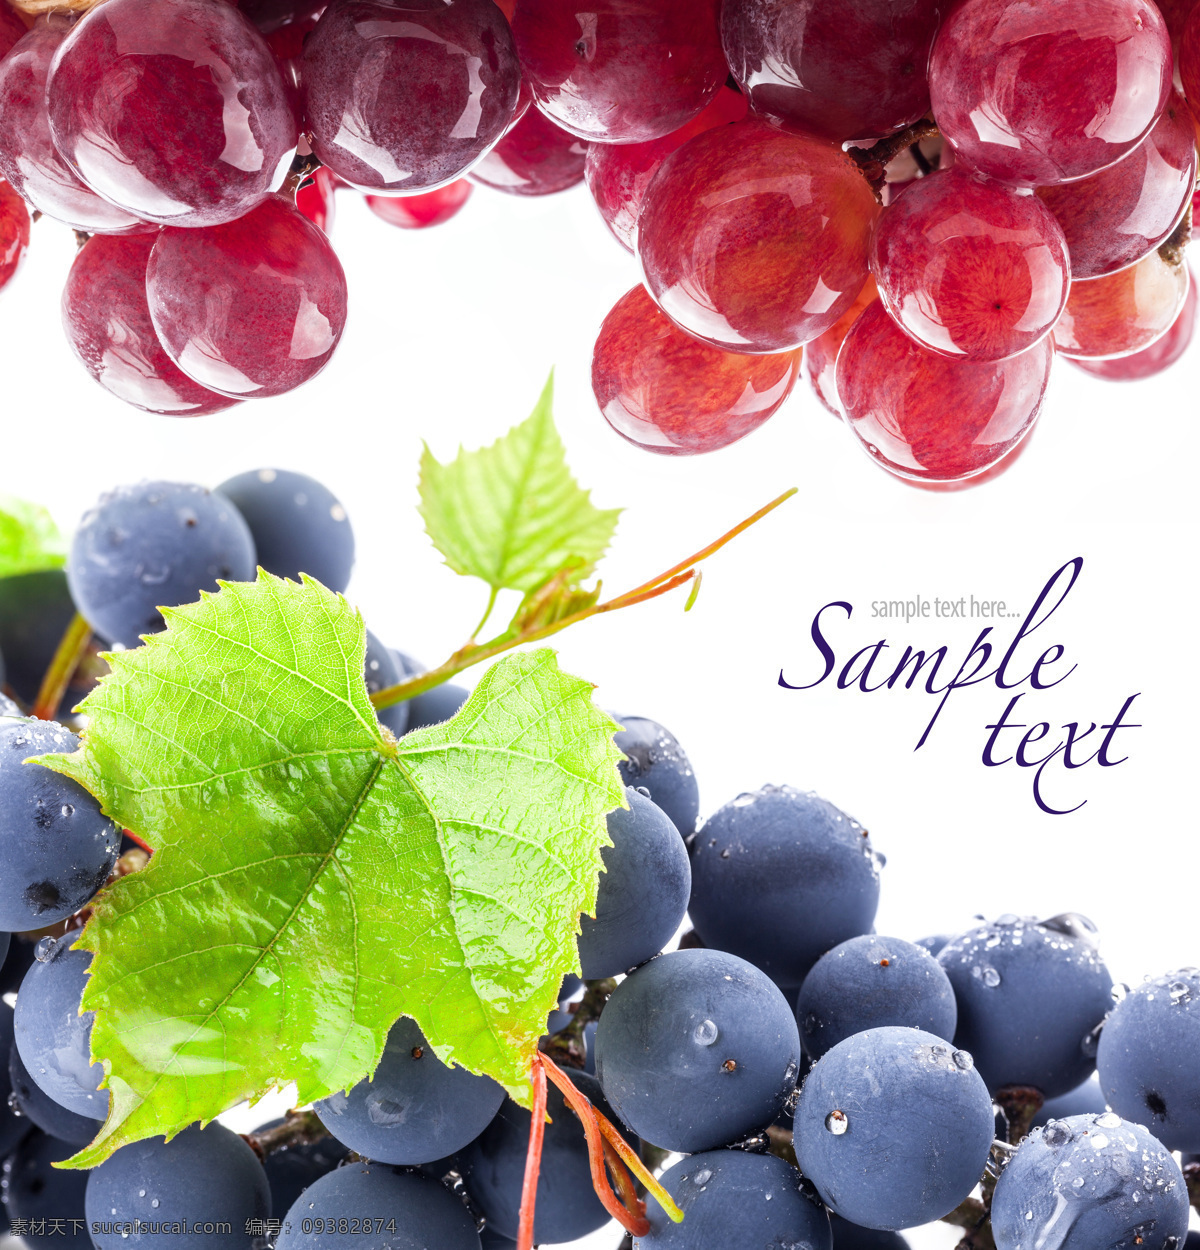 新鲜葡萄背景 新鲜葡萄 提子 新鲜水果 水果摄影 水果背景 水果 水果蔬菜 餐饮美食 白色